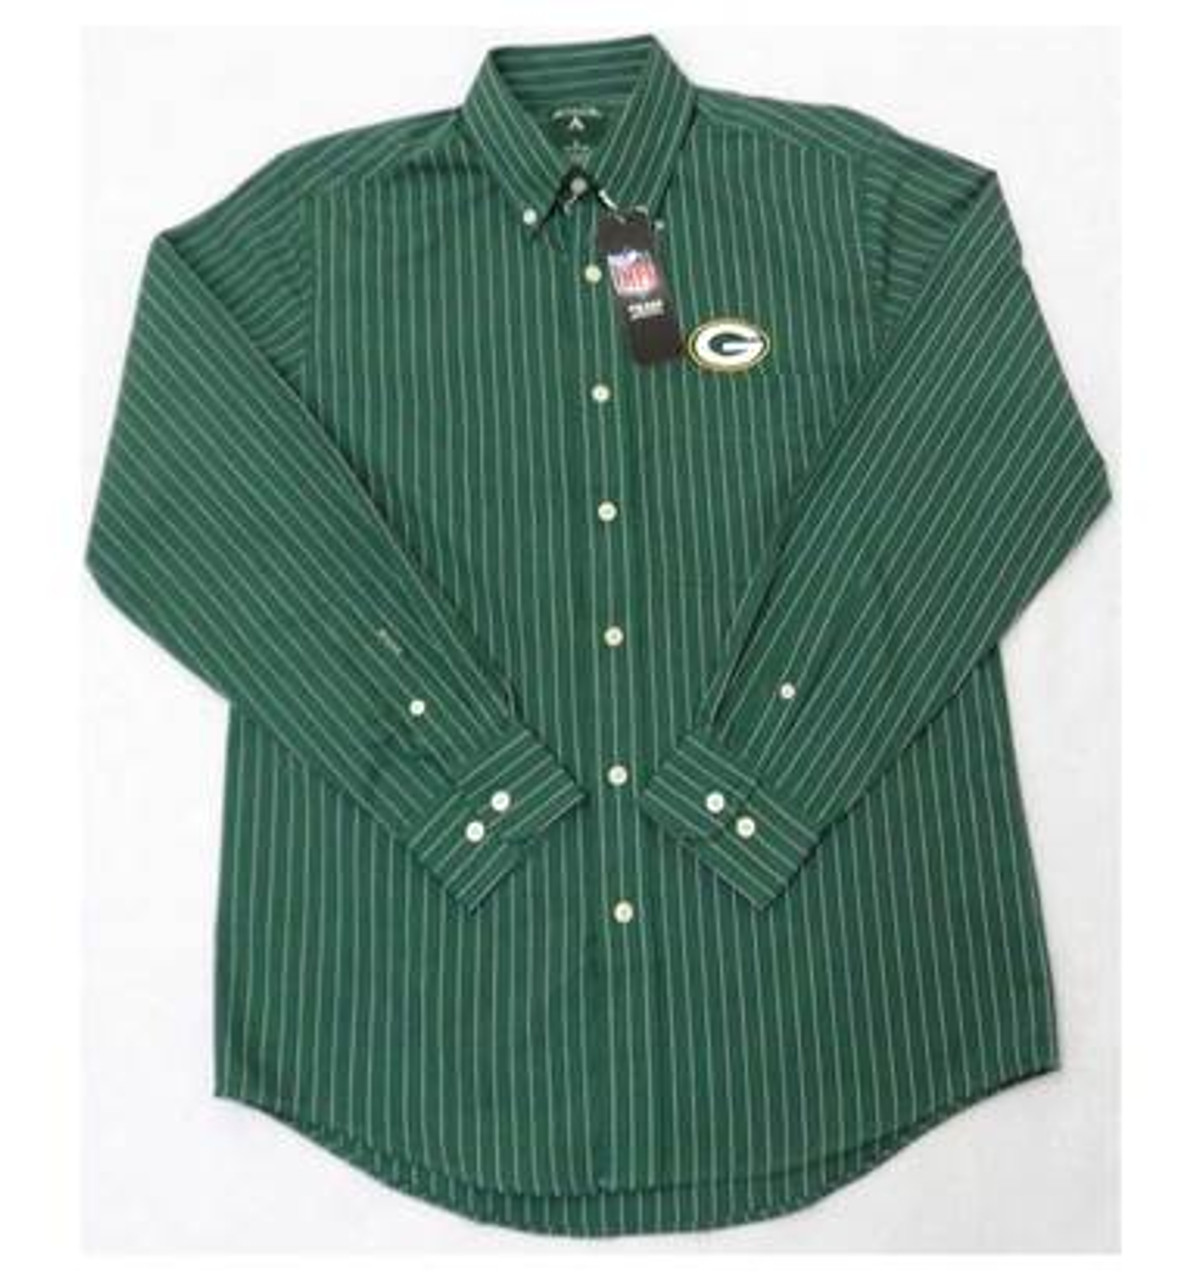 green bay packers dress shirt